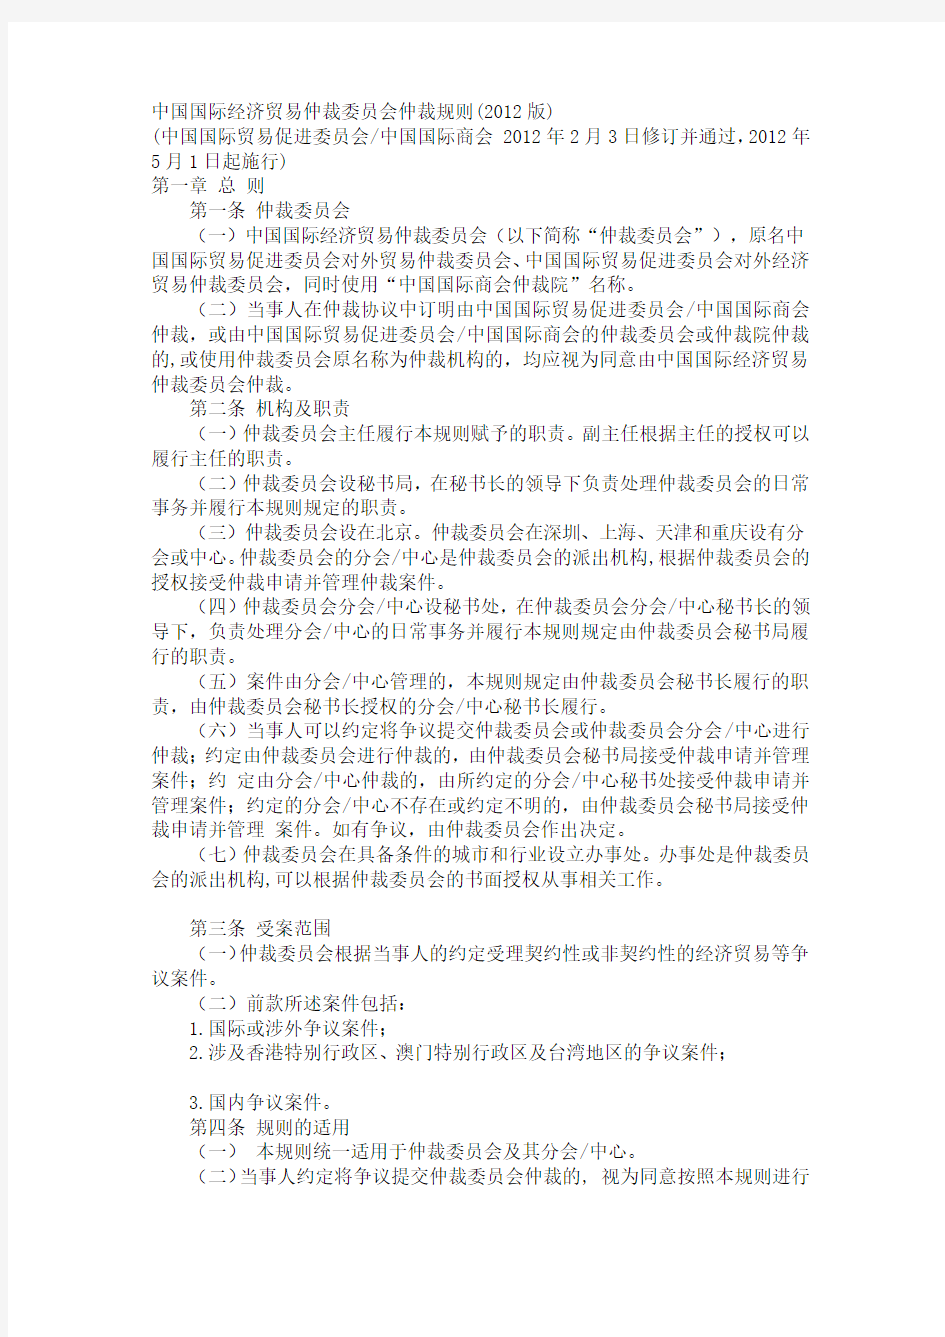 中国国际经济贸易仲裁委员会仲裁规则2012